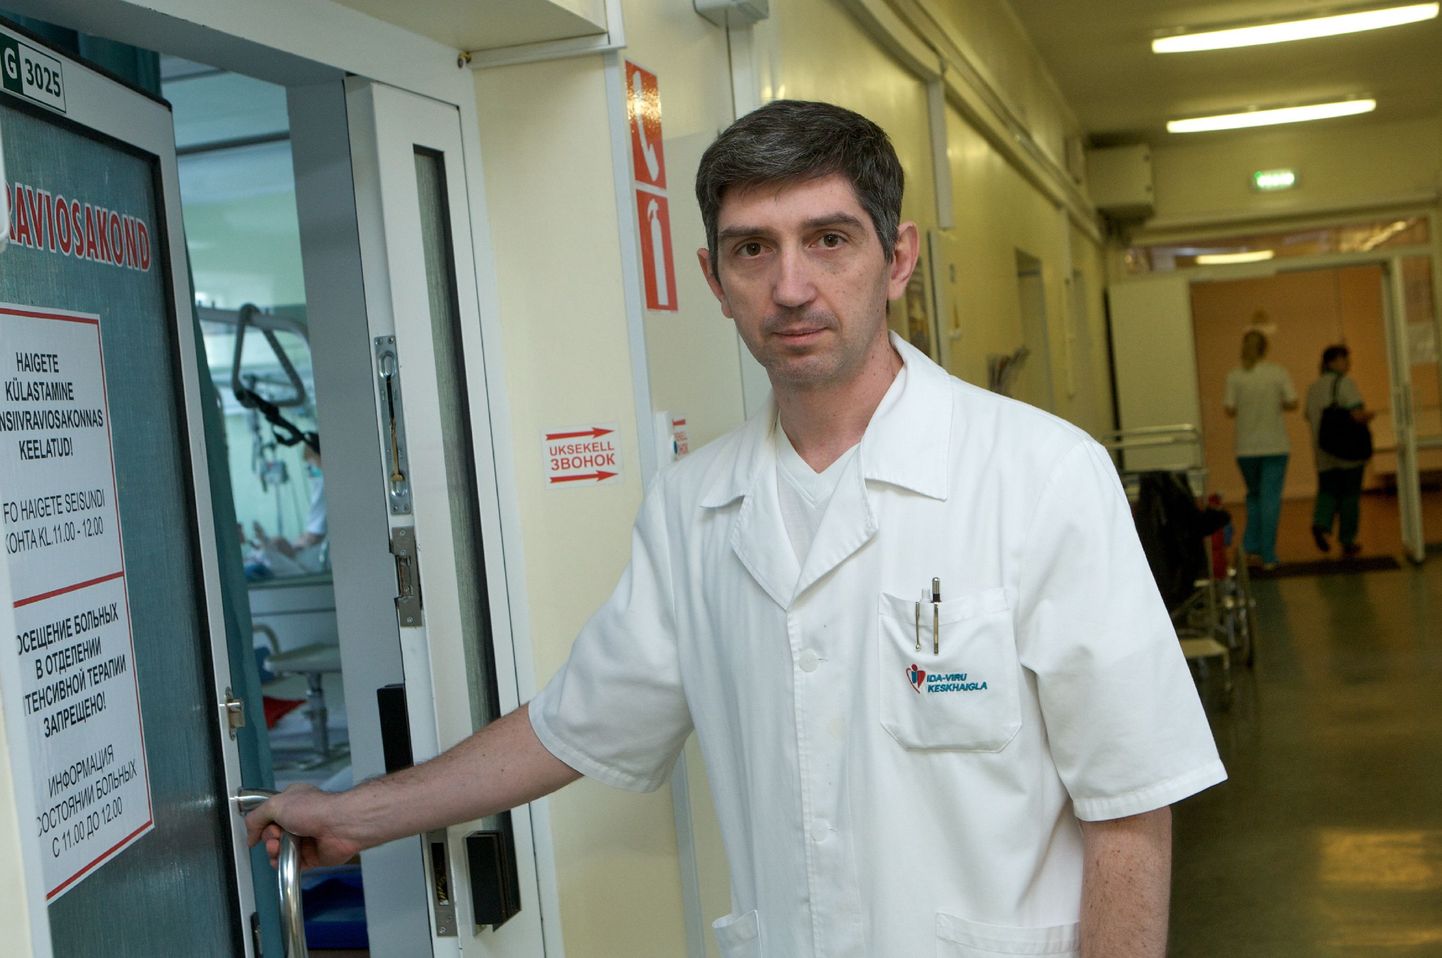 Moldovas sündinud ja varem Moskvas töötanud Igor Vagimov on nüüd arst Ida-Viru Keskhaiglas.